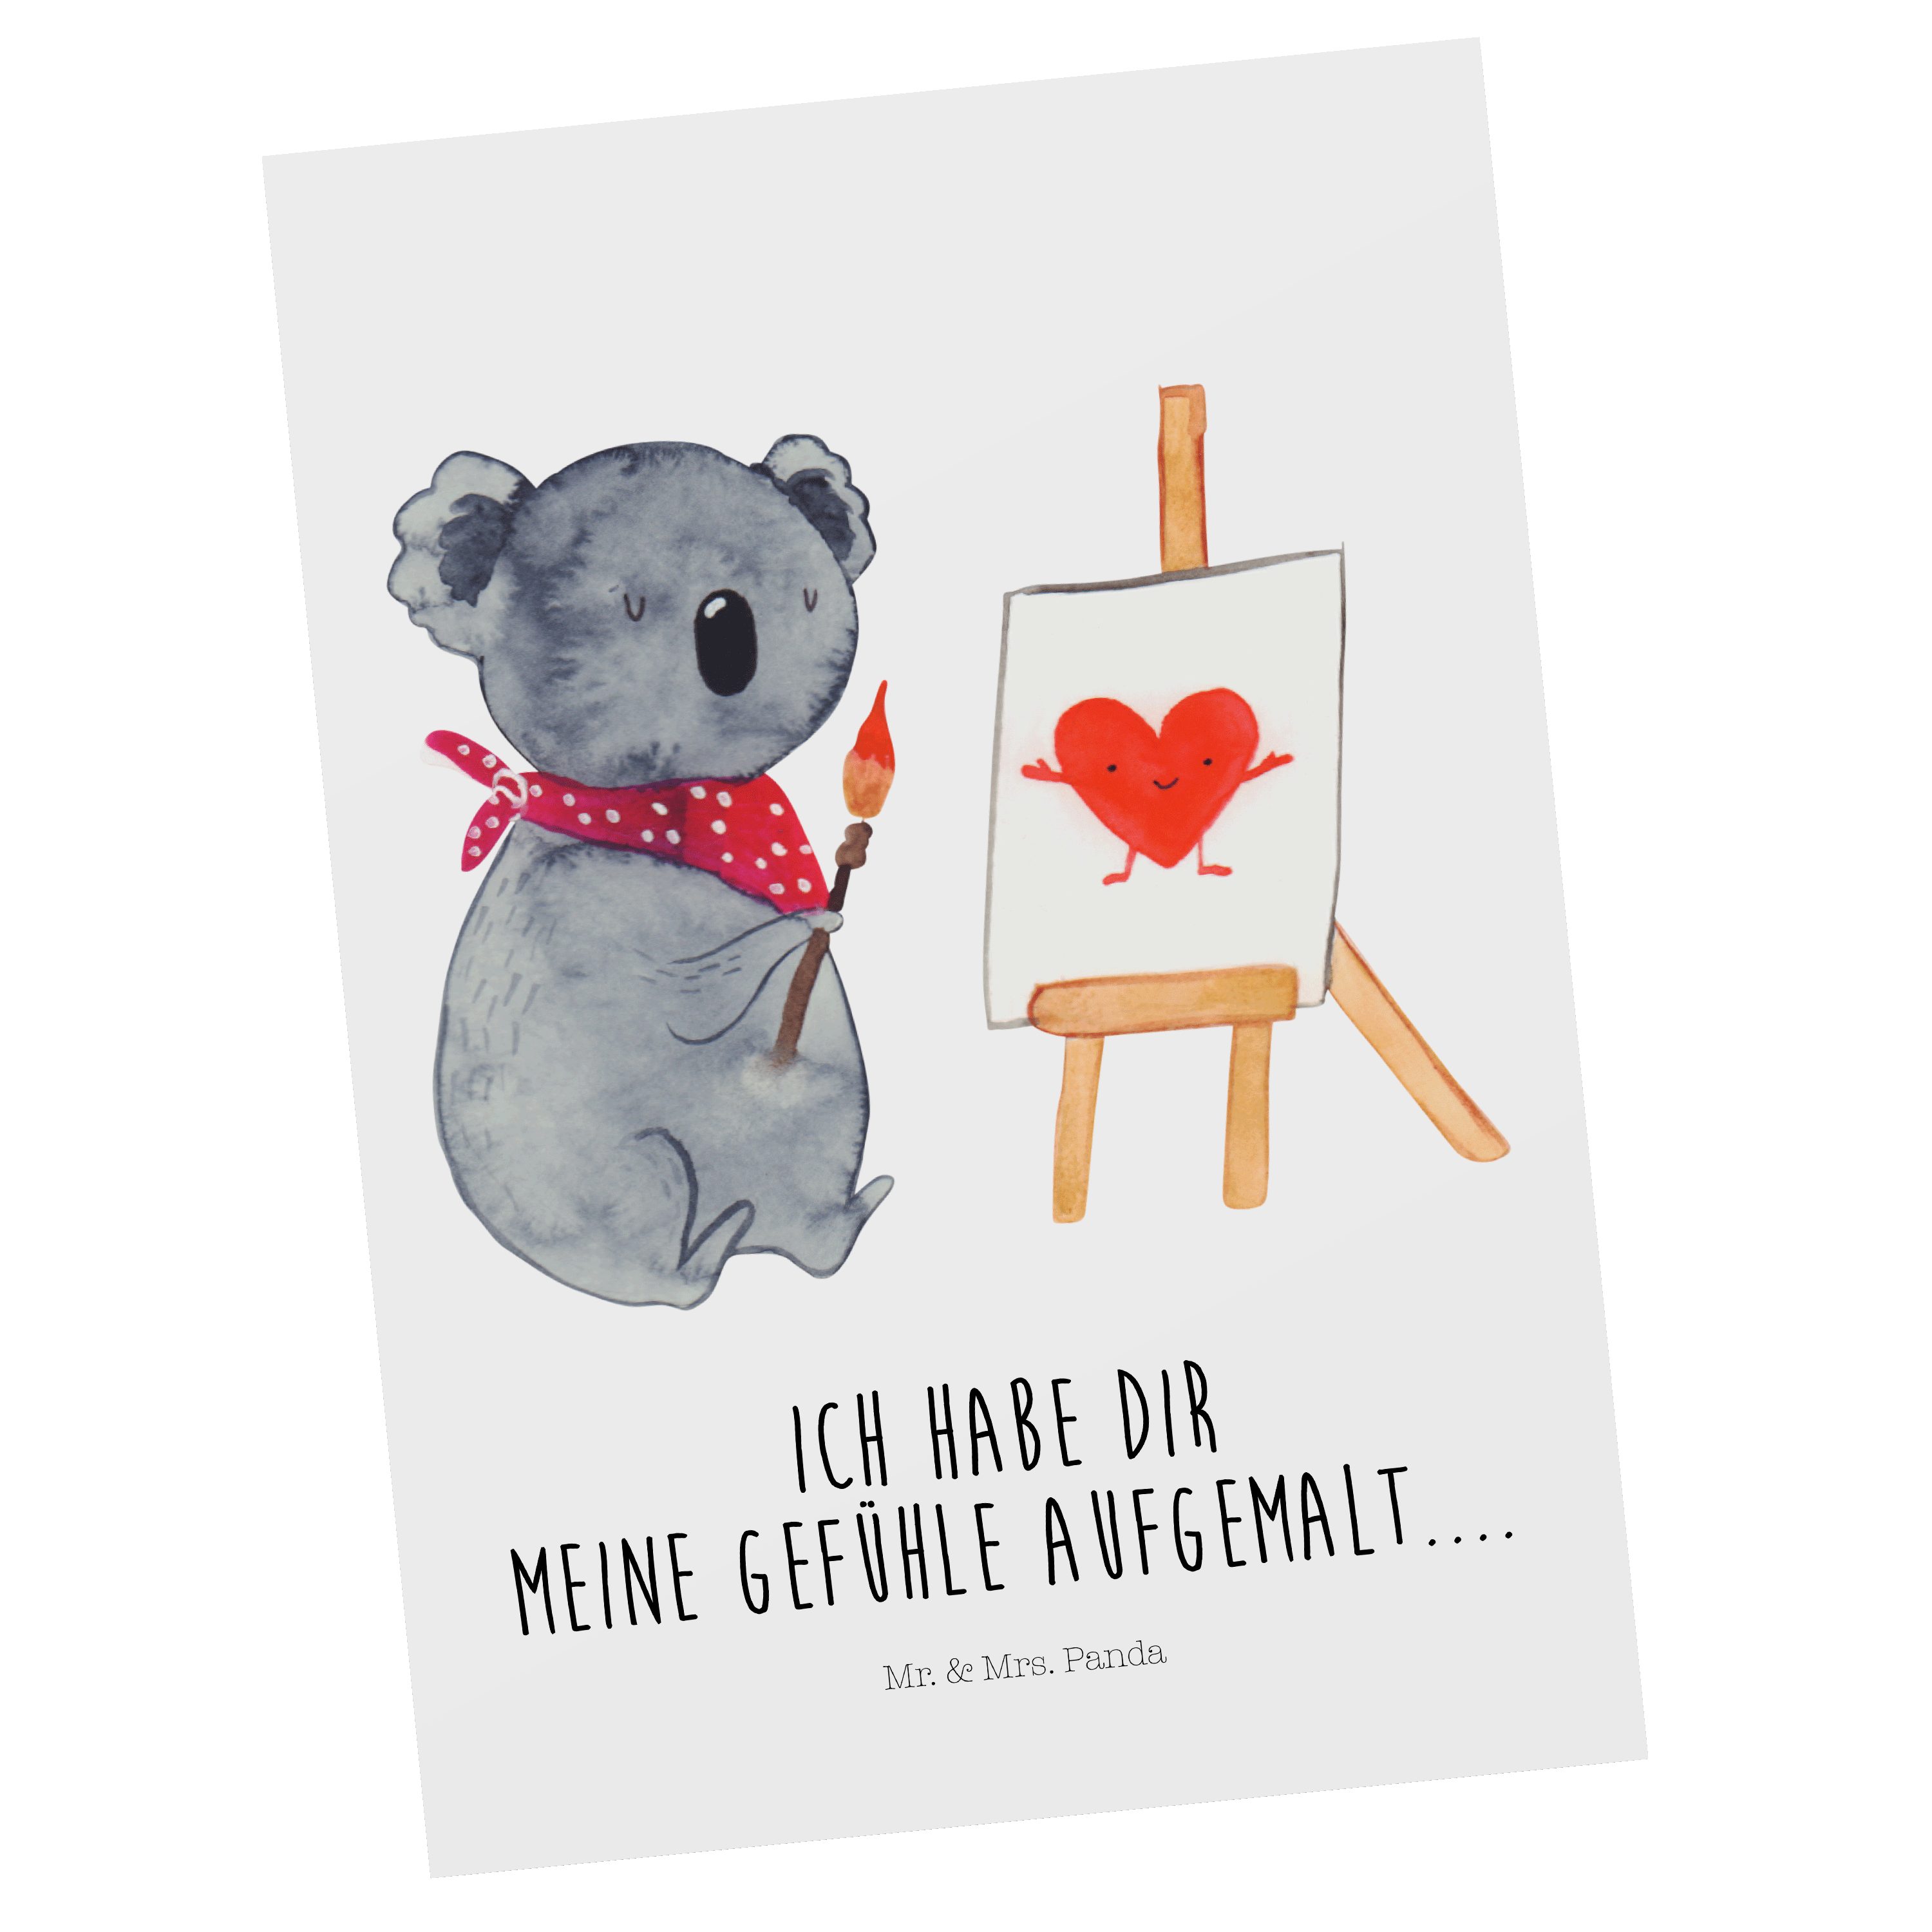 Mr. & Mrs. Panda Postkarte Koala Künstler - Weiß - Geschenk, Liebesgeschenk, Ansichtskarte, Dank